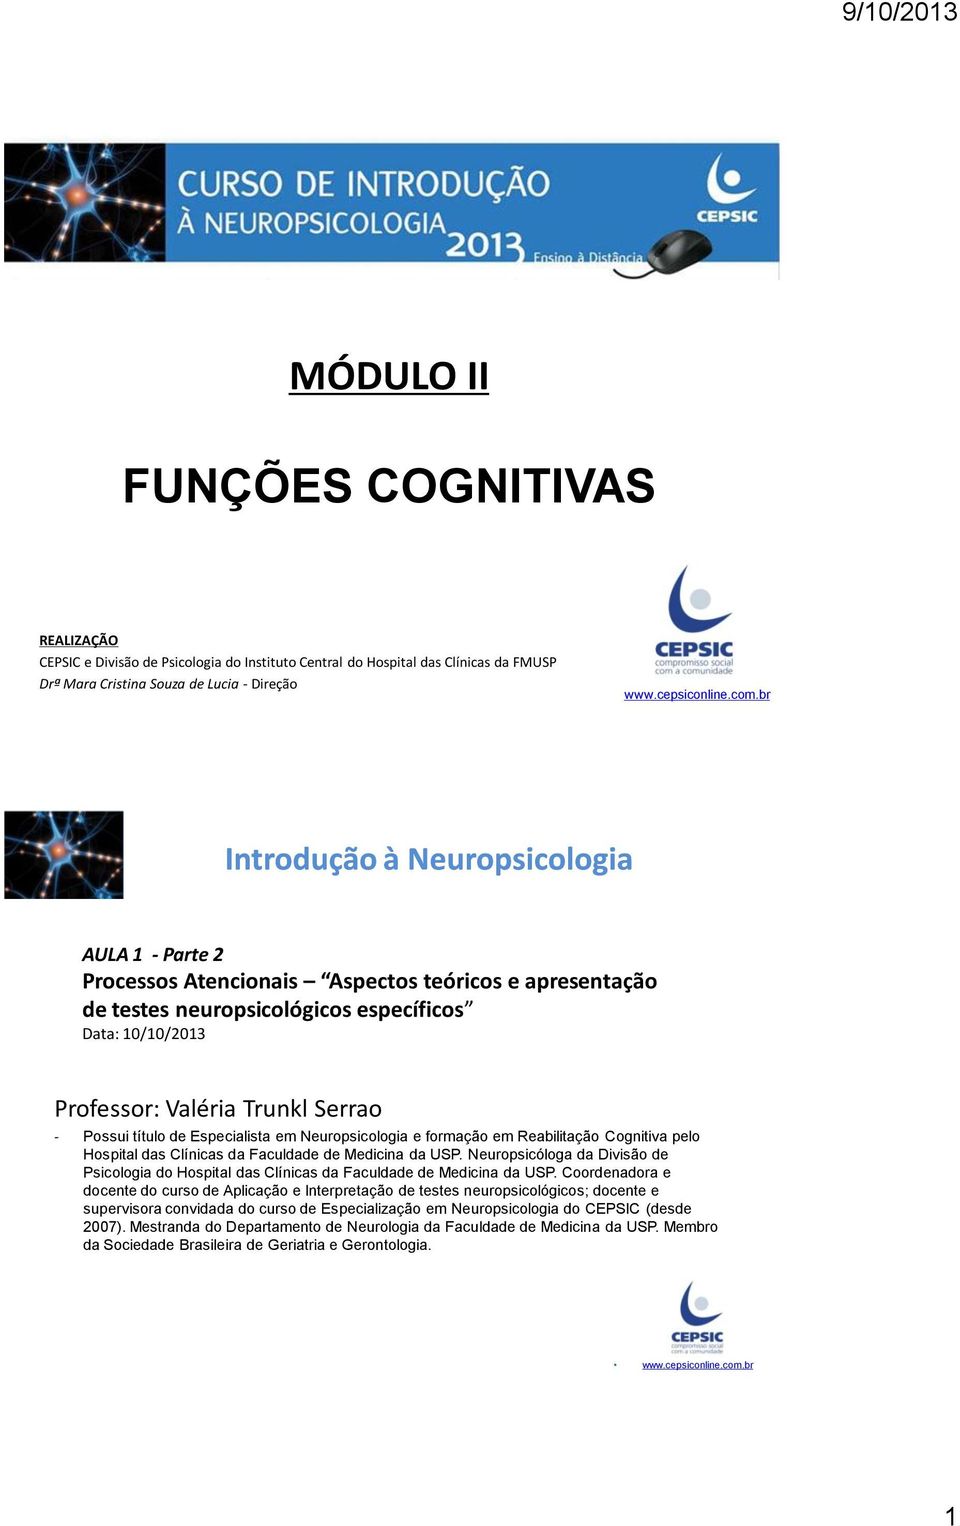 Neuropsicologia e formação em Reabilitação Cognitiva pelo Hospital das Clínicas da Faculdade de Medicina da USP.